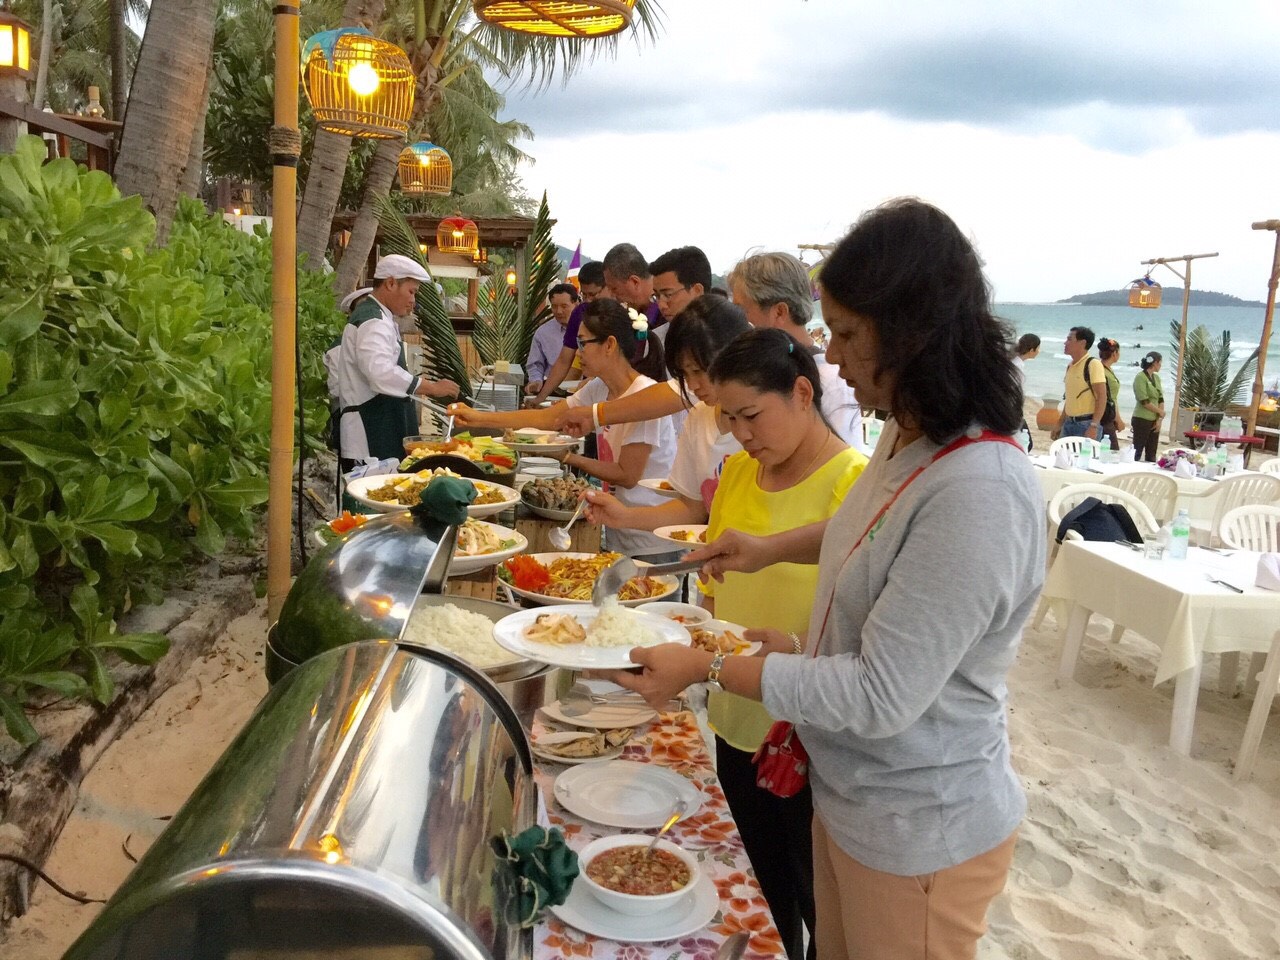 Бесплатный шведский стол, протяженностью 3 км с 5 892 блюдами тайской, китайской и международной кухни на фестивале Самуи 2017. Фото PRD